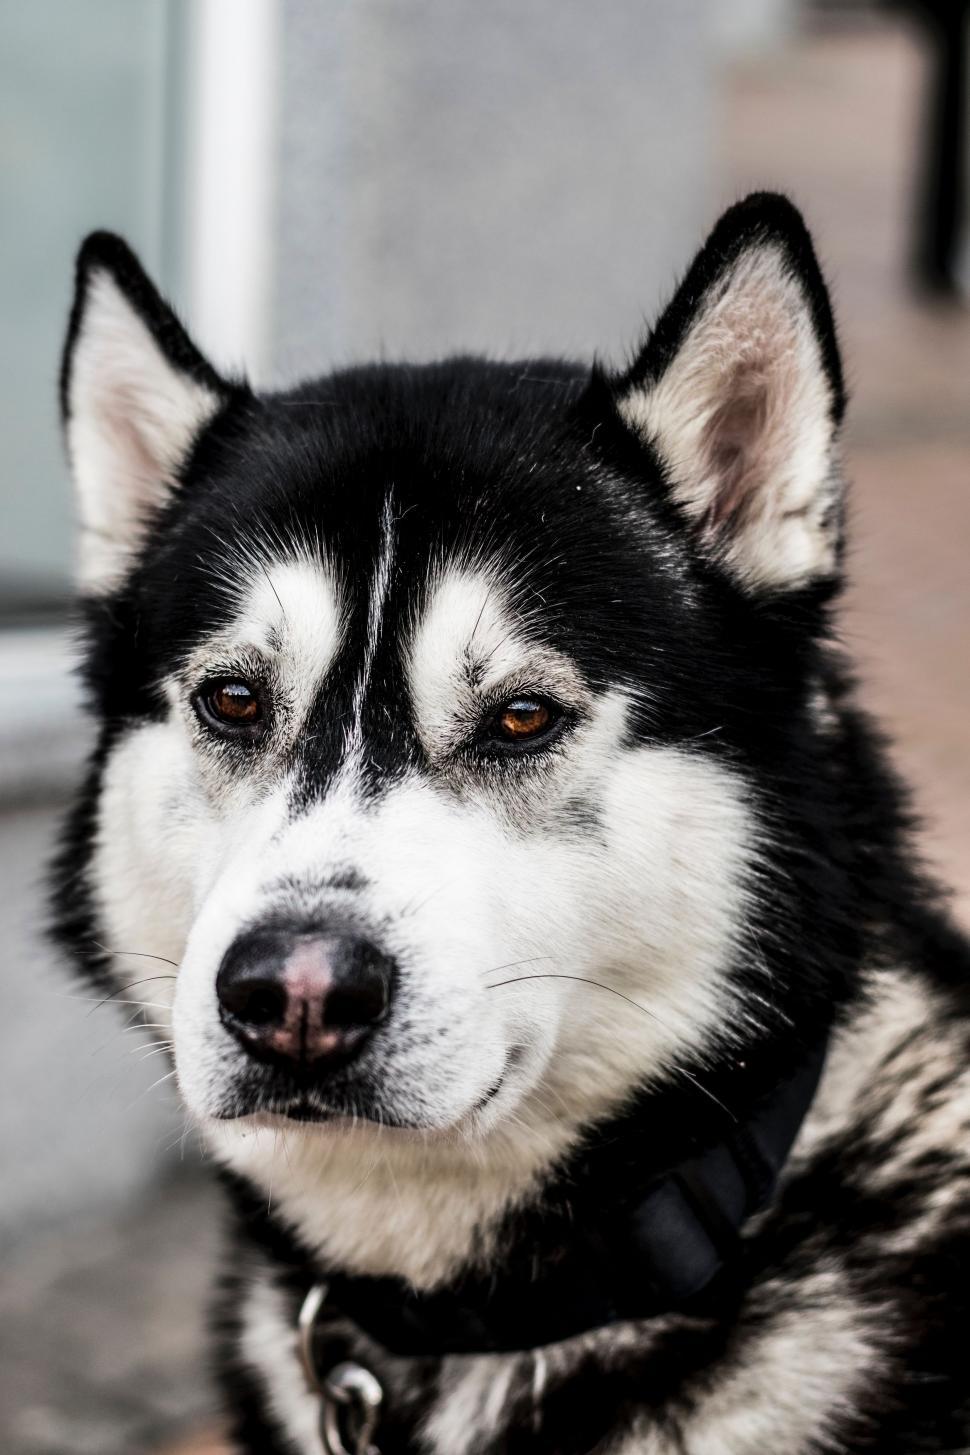 Free Image of dog eskimo dog canine domestic animal sled dog malamute animal siberian husky 